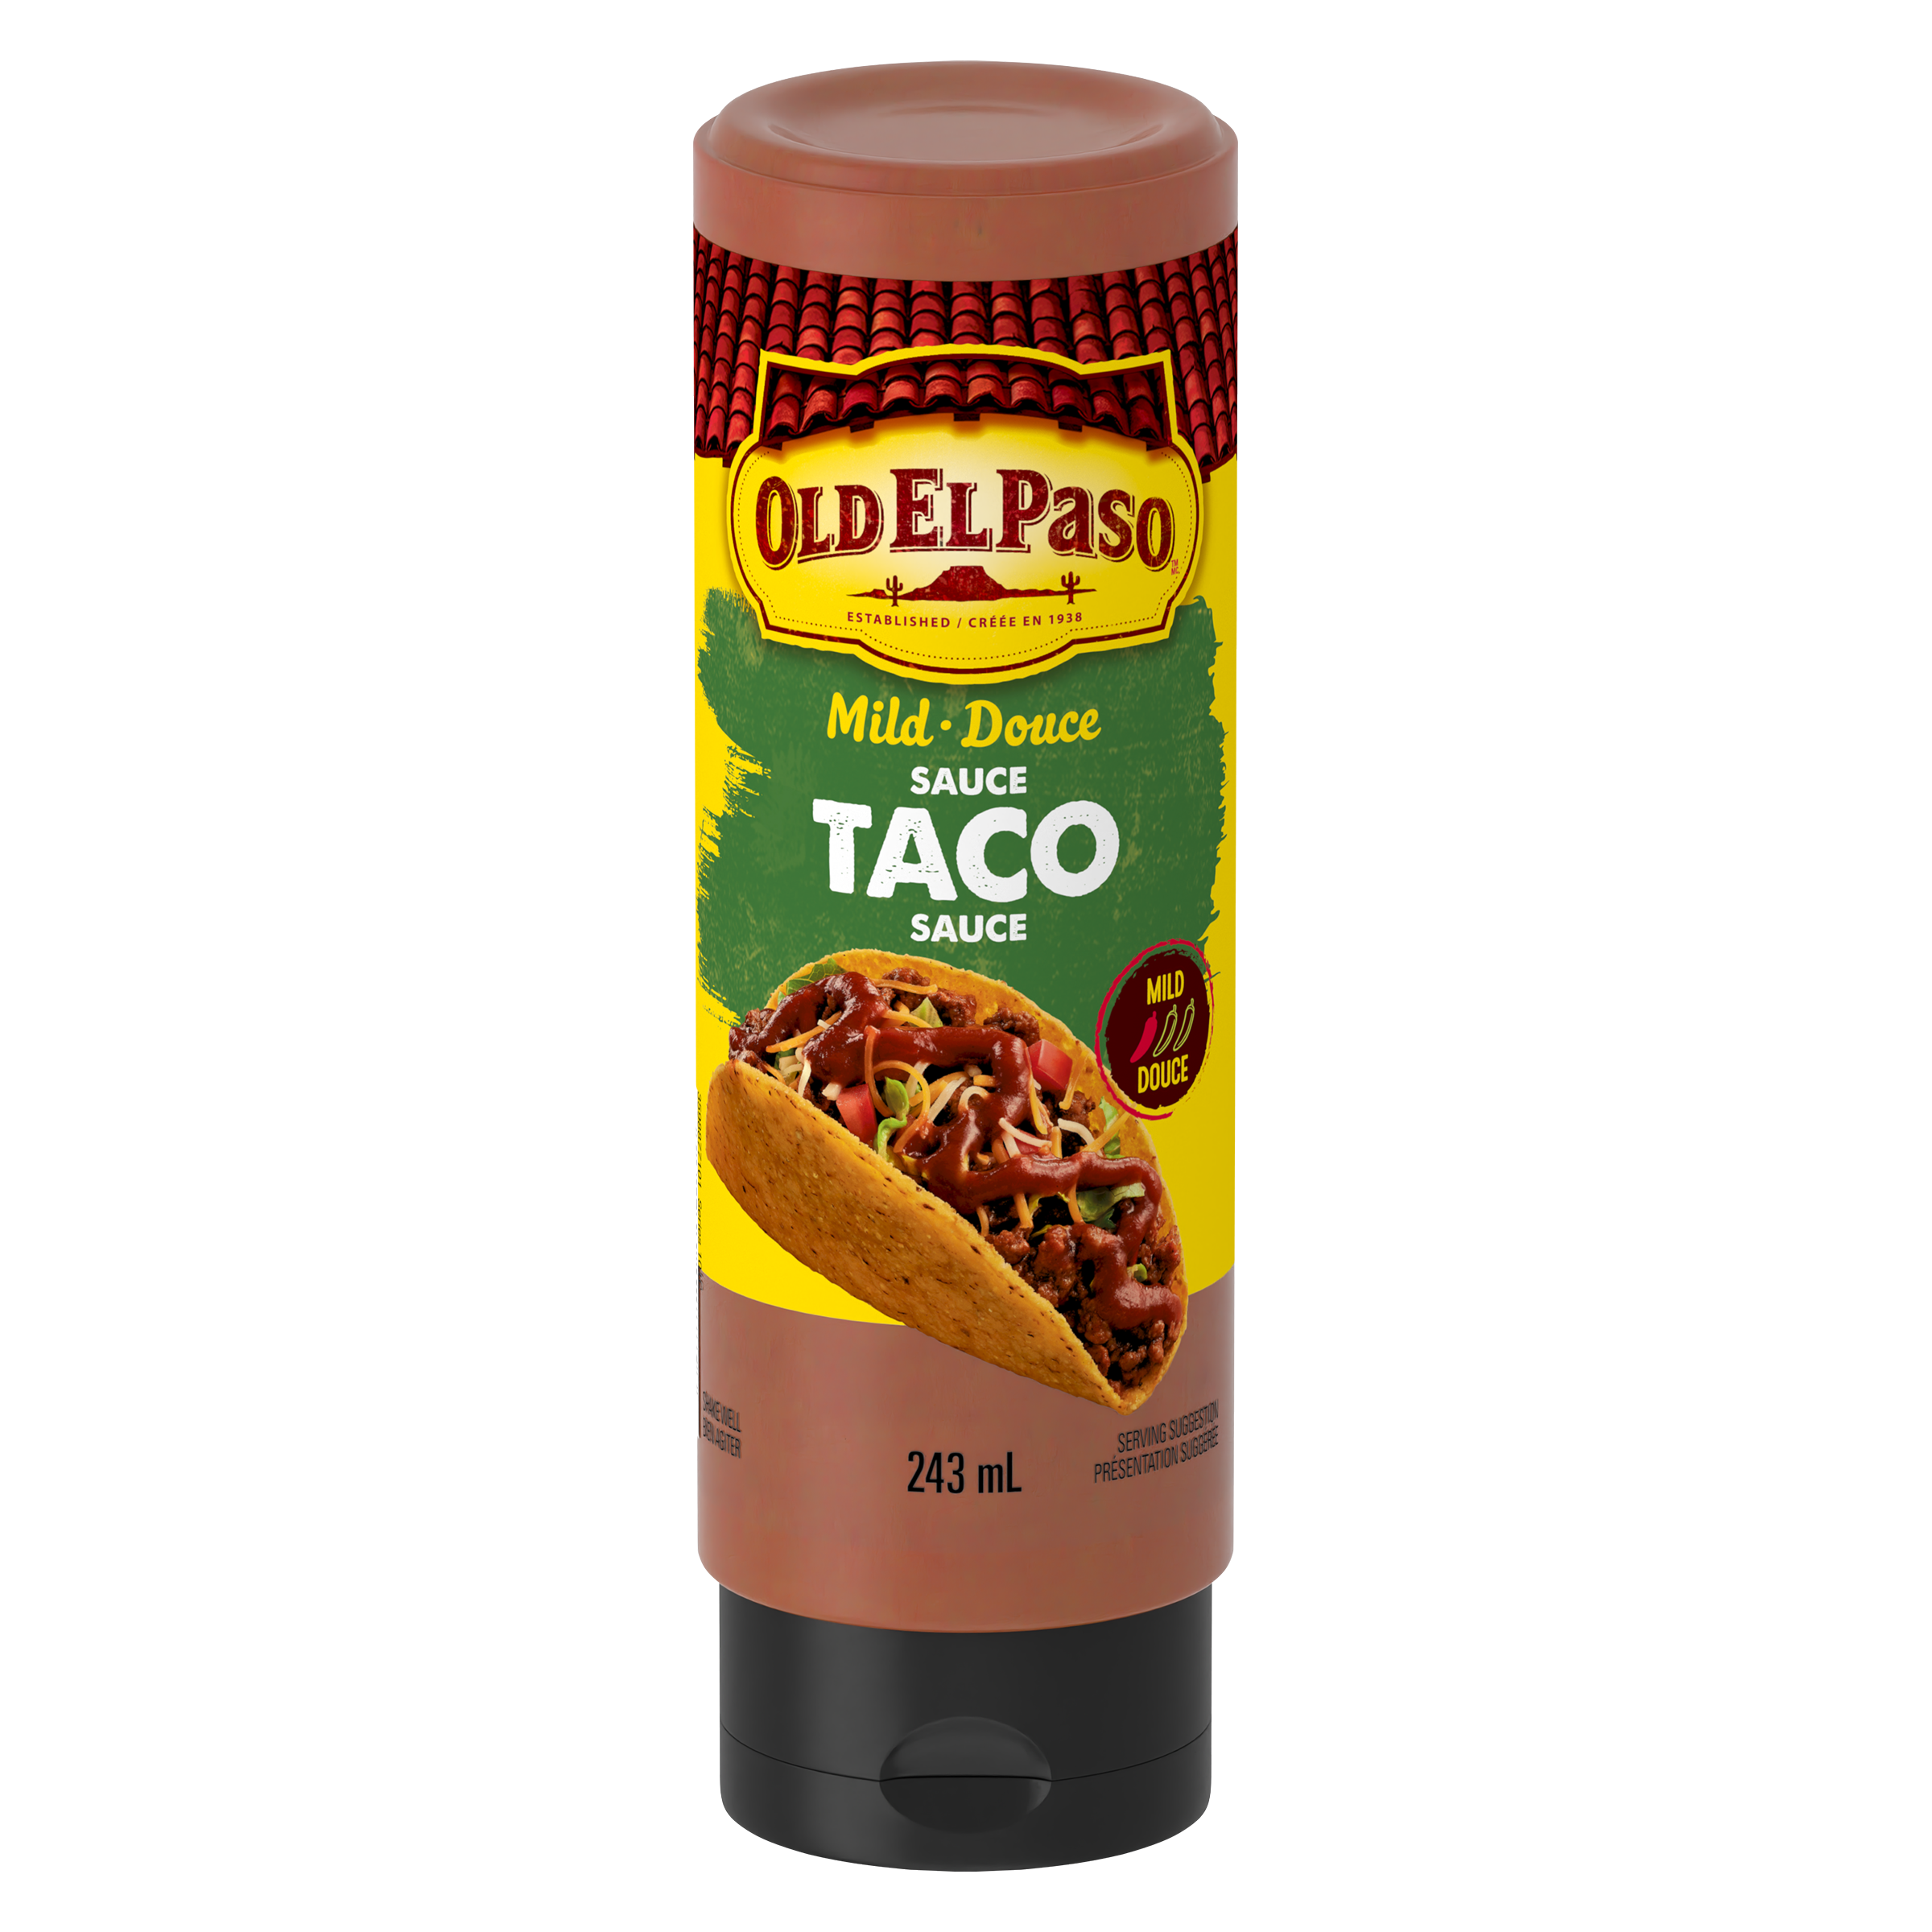 Taco Sauce - Mild